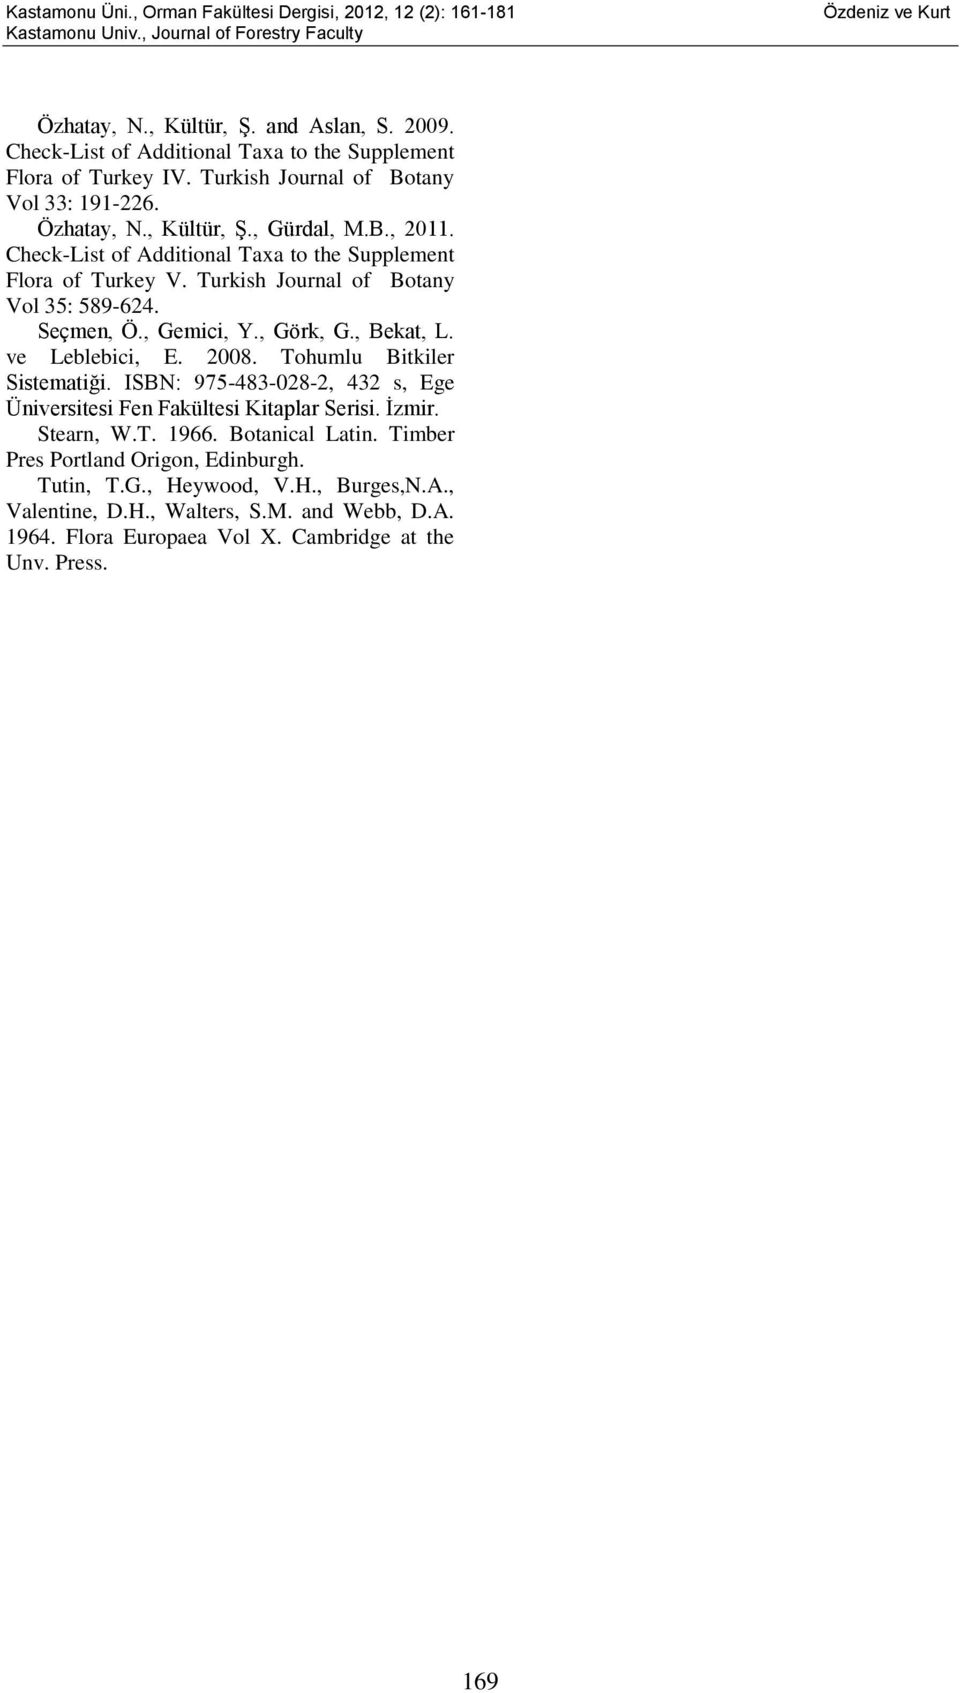 Seçmen, Ö., Gemici, Y., Görk, G., Bekat, L. ve Leblebici, E. 2008. Tohumlu Bitkiler Sistematiği. ISBN: 975-483-028-2, 432 s, Ege Üniversitesi Fen Fakültesi Kitaplar Serisi. İzmir. Stearn, W.T. 1966.